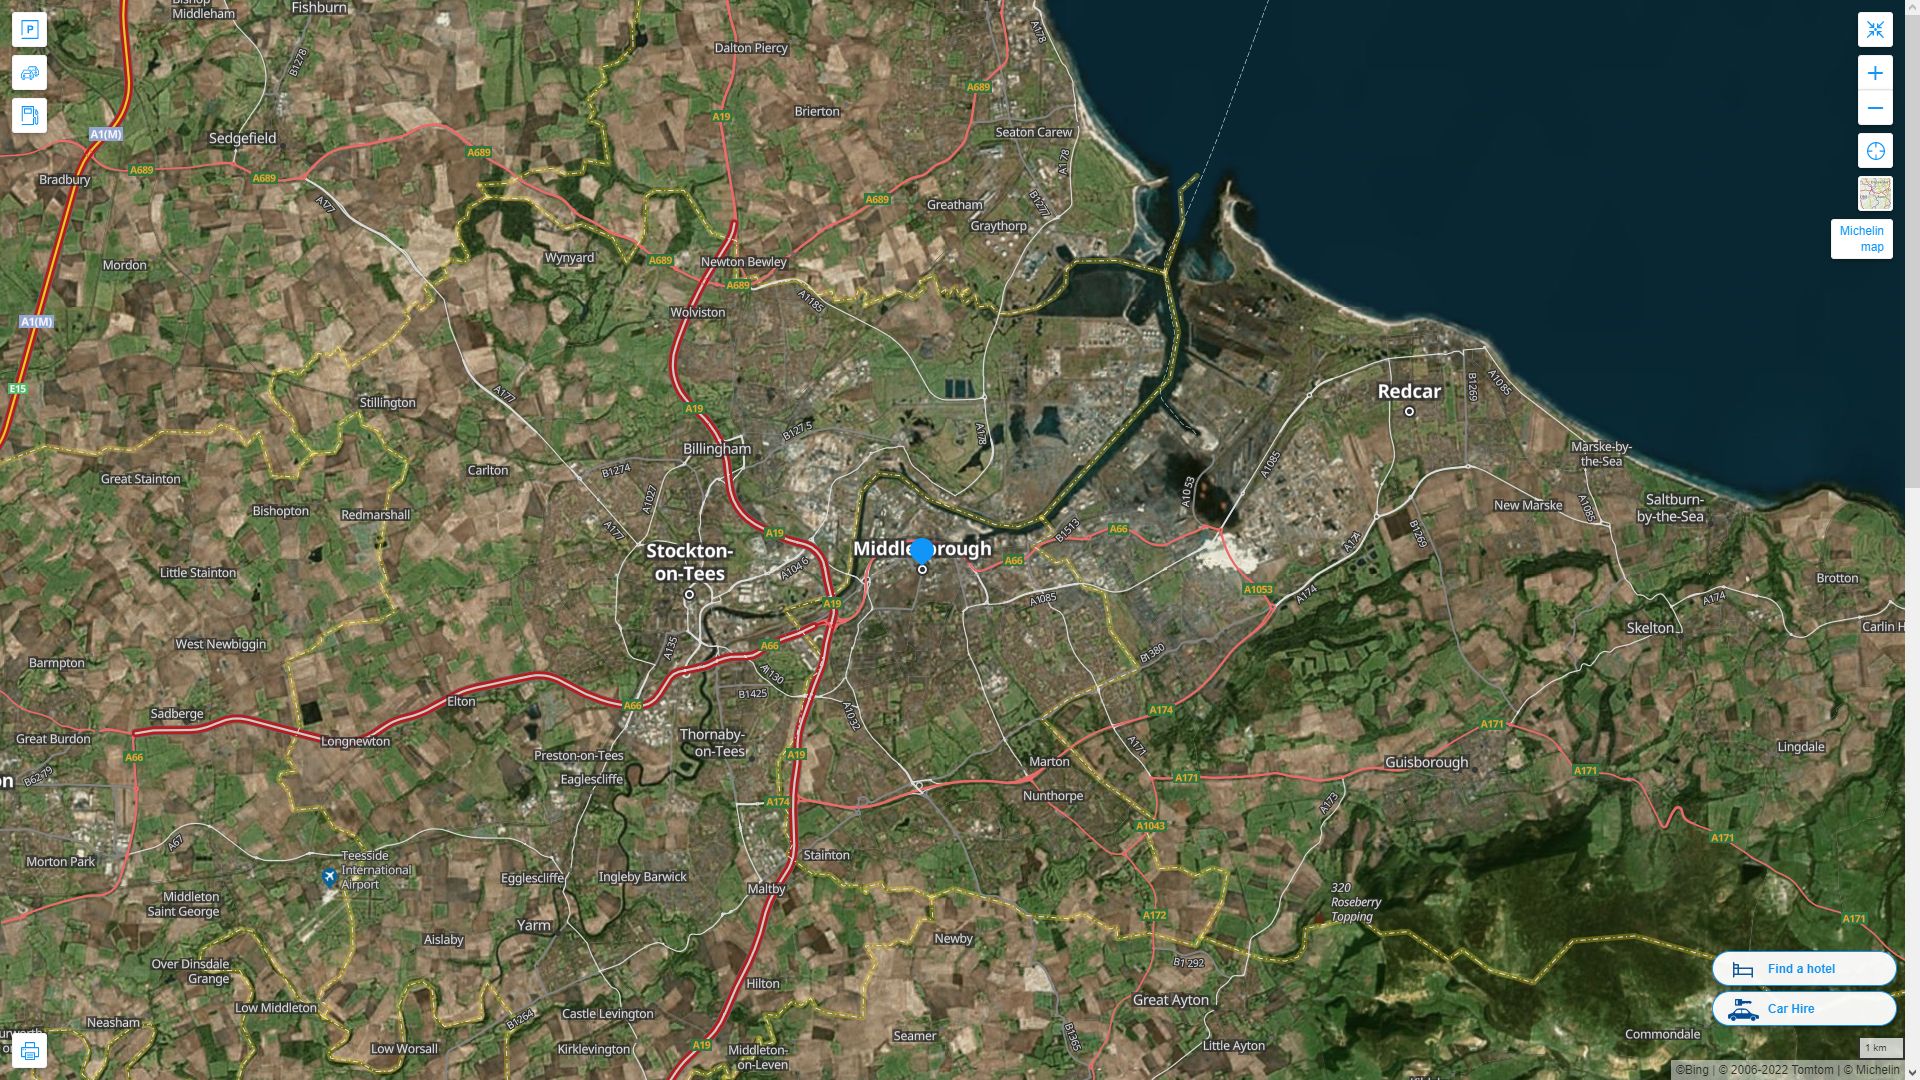 Middlesbrough Royaume Uni Autoroute et carte routiere avec vue satellite